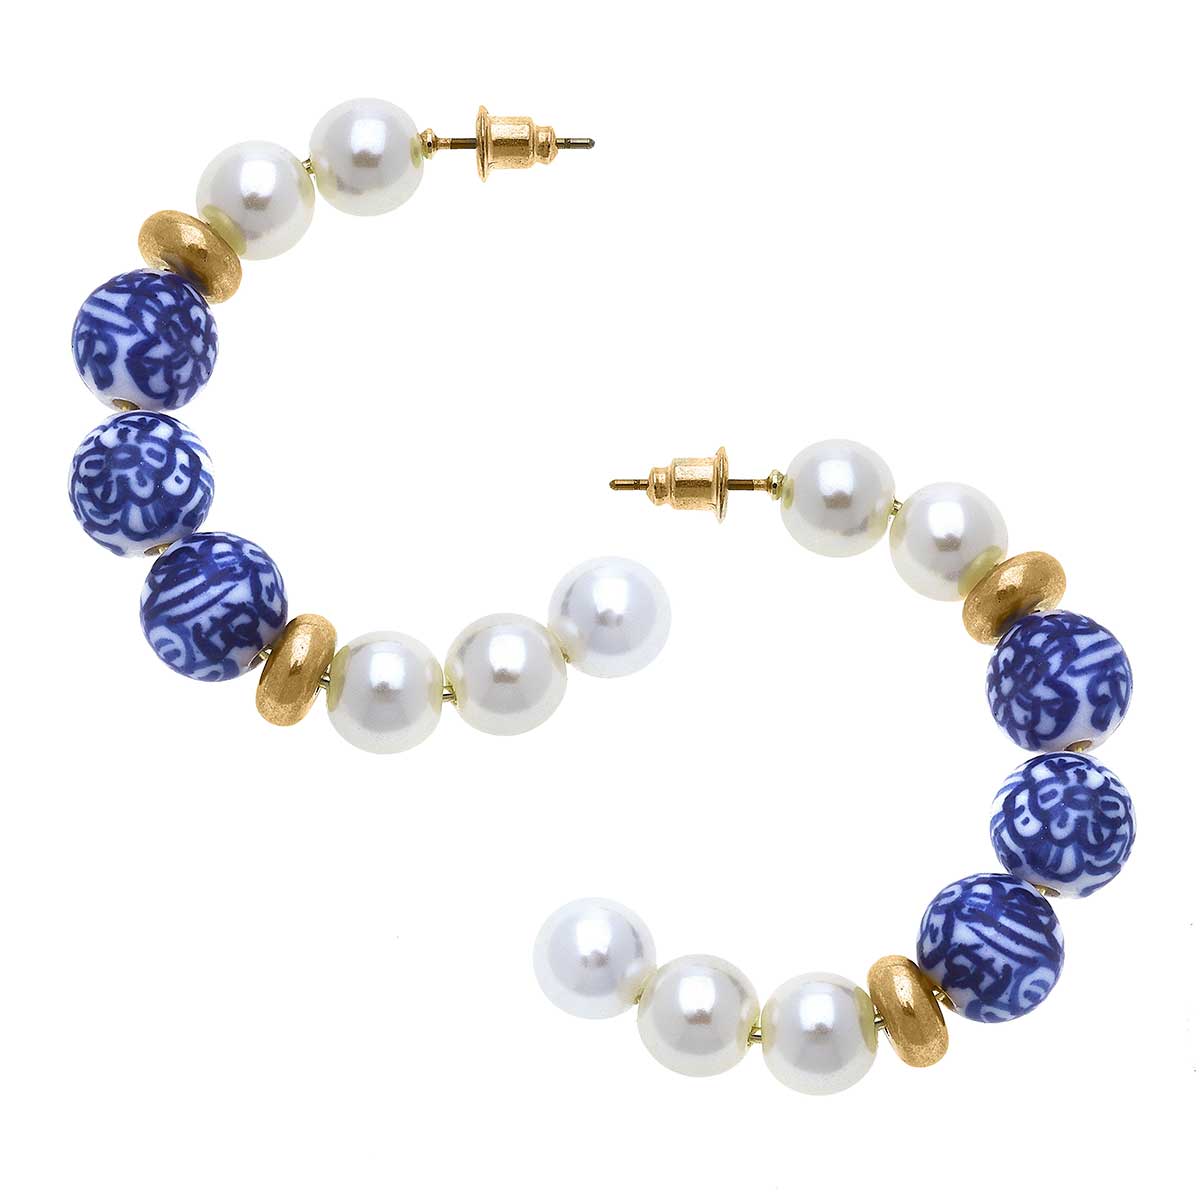 Margaret Chinoiserie & Pearl Hoop Earrings in Blue & White - Salud HTX